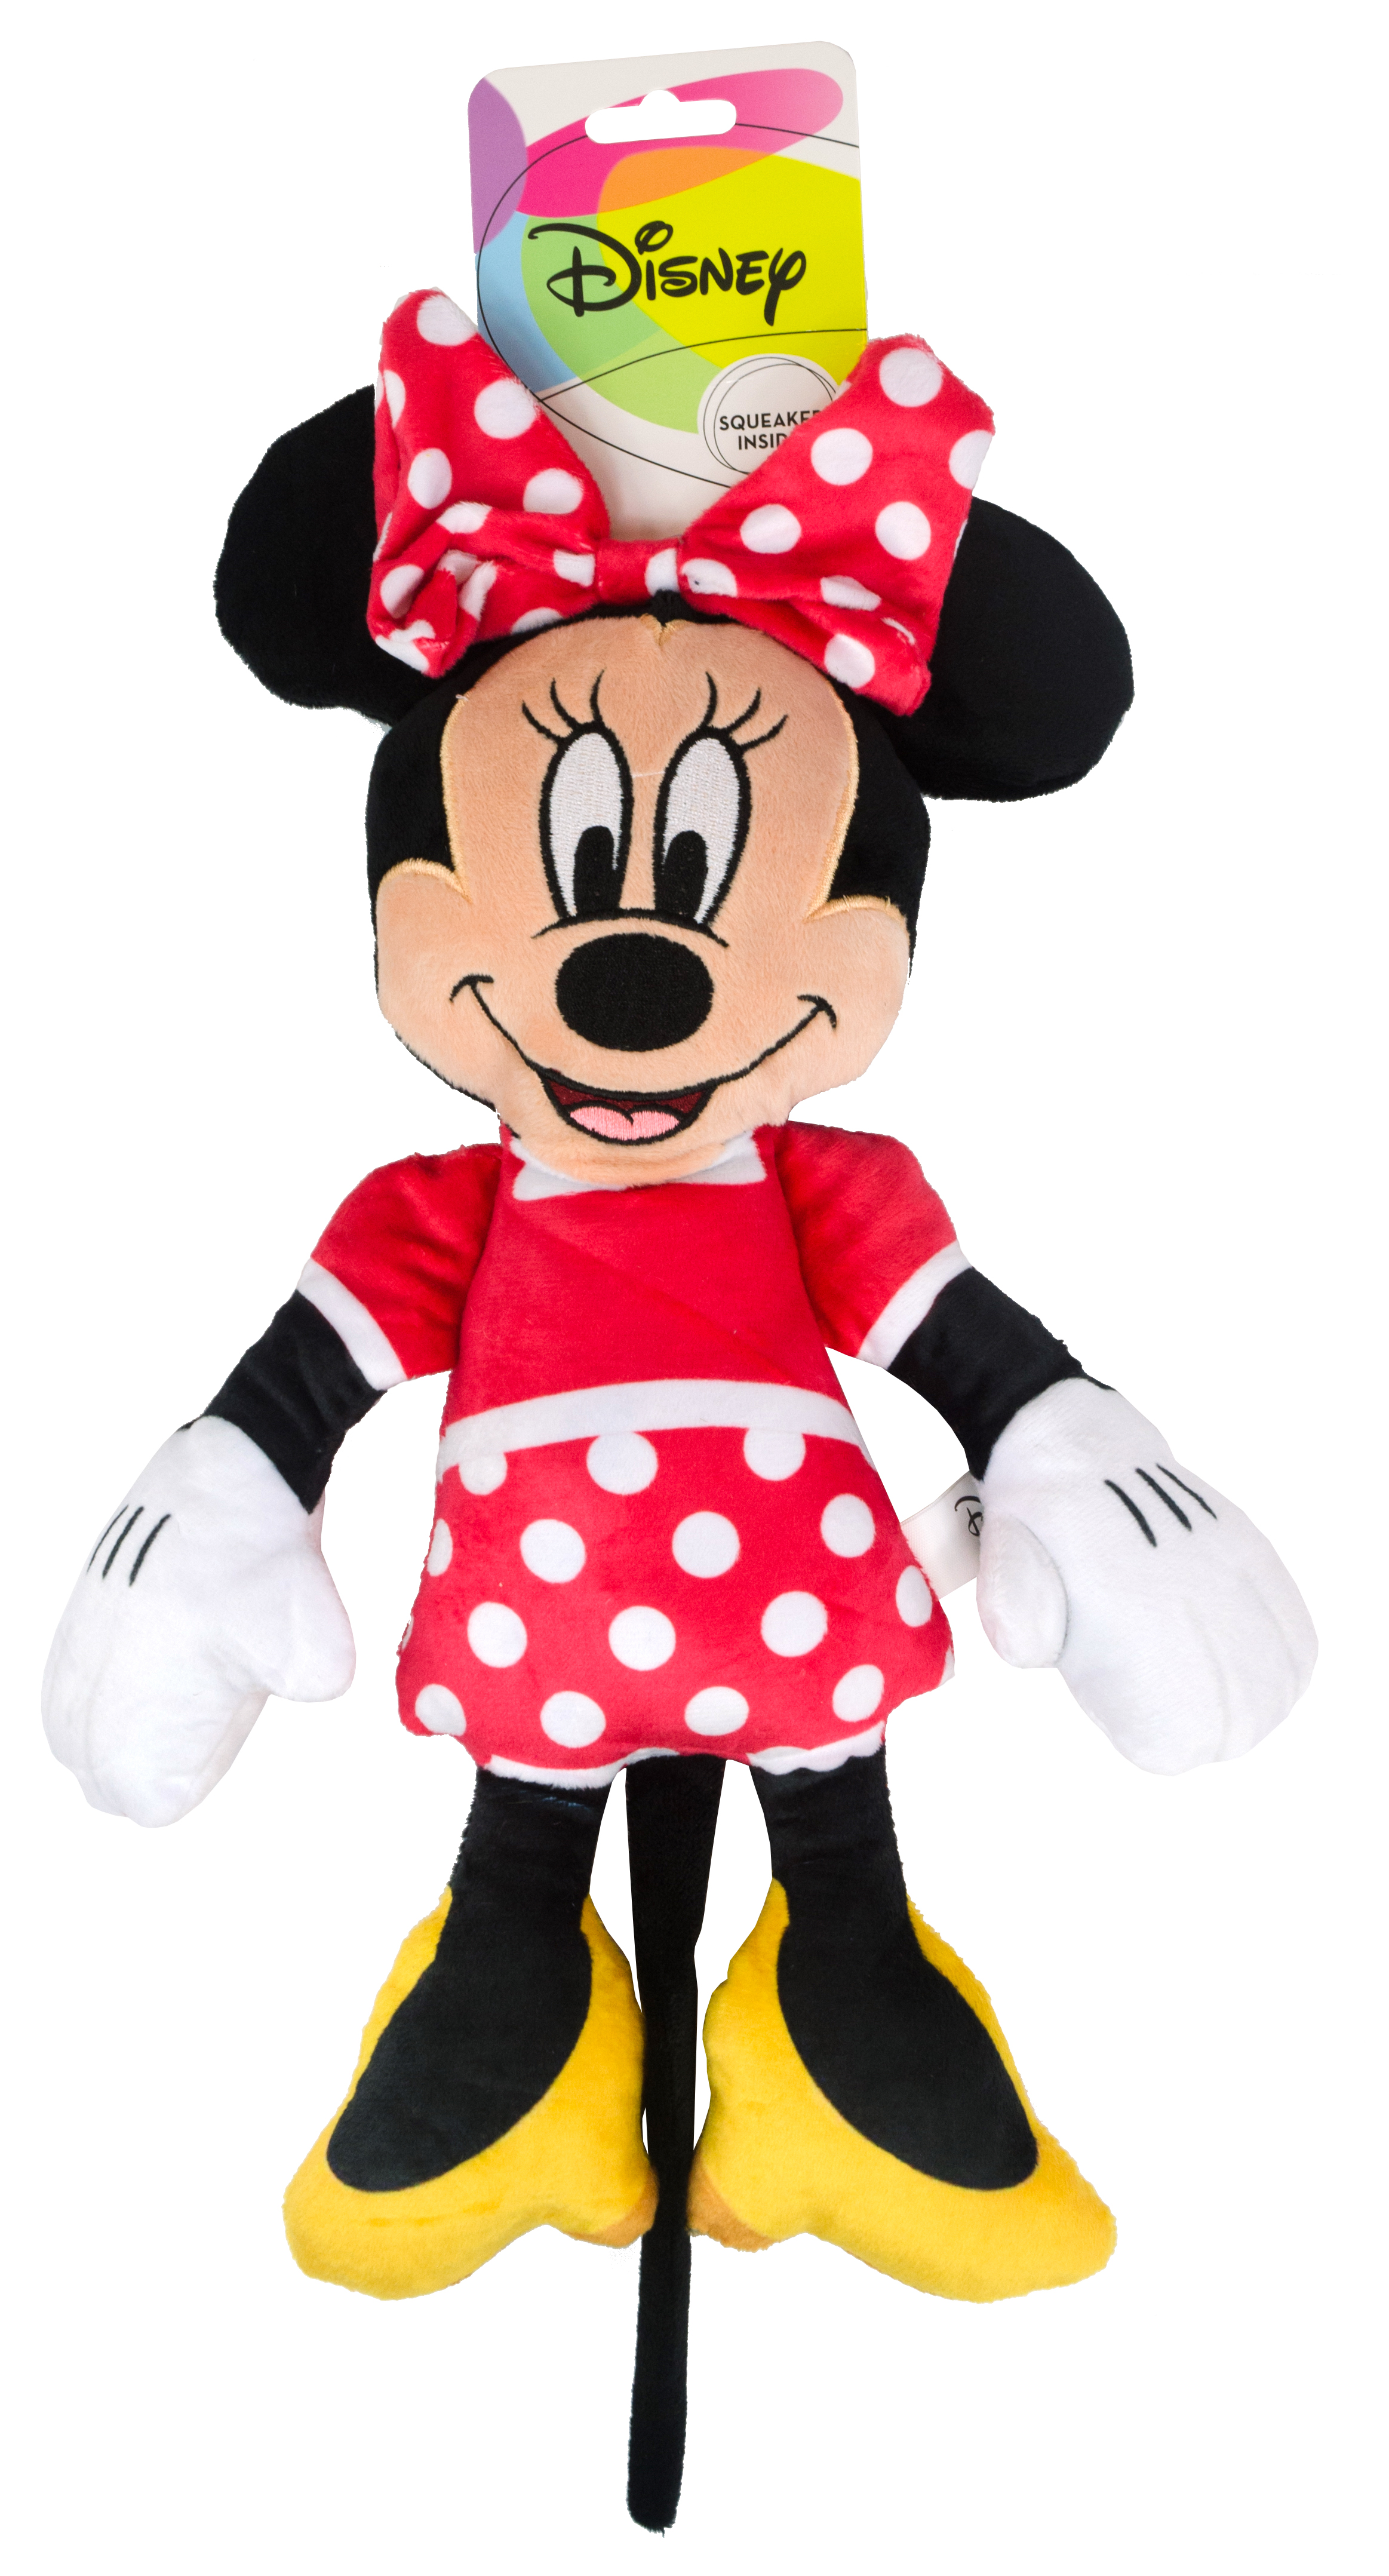 Disney Plush Toy - Minnie Mouse